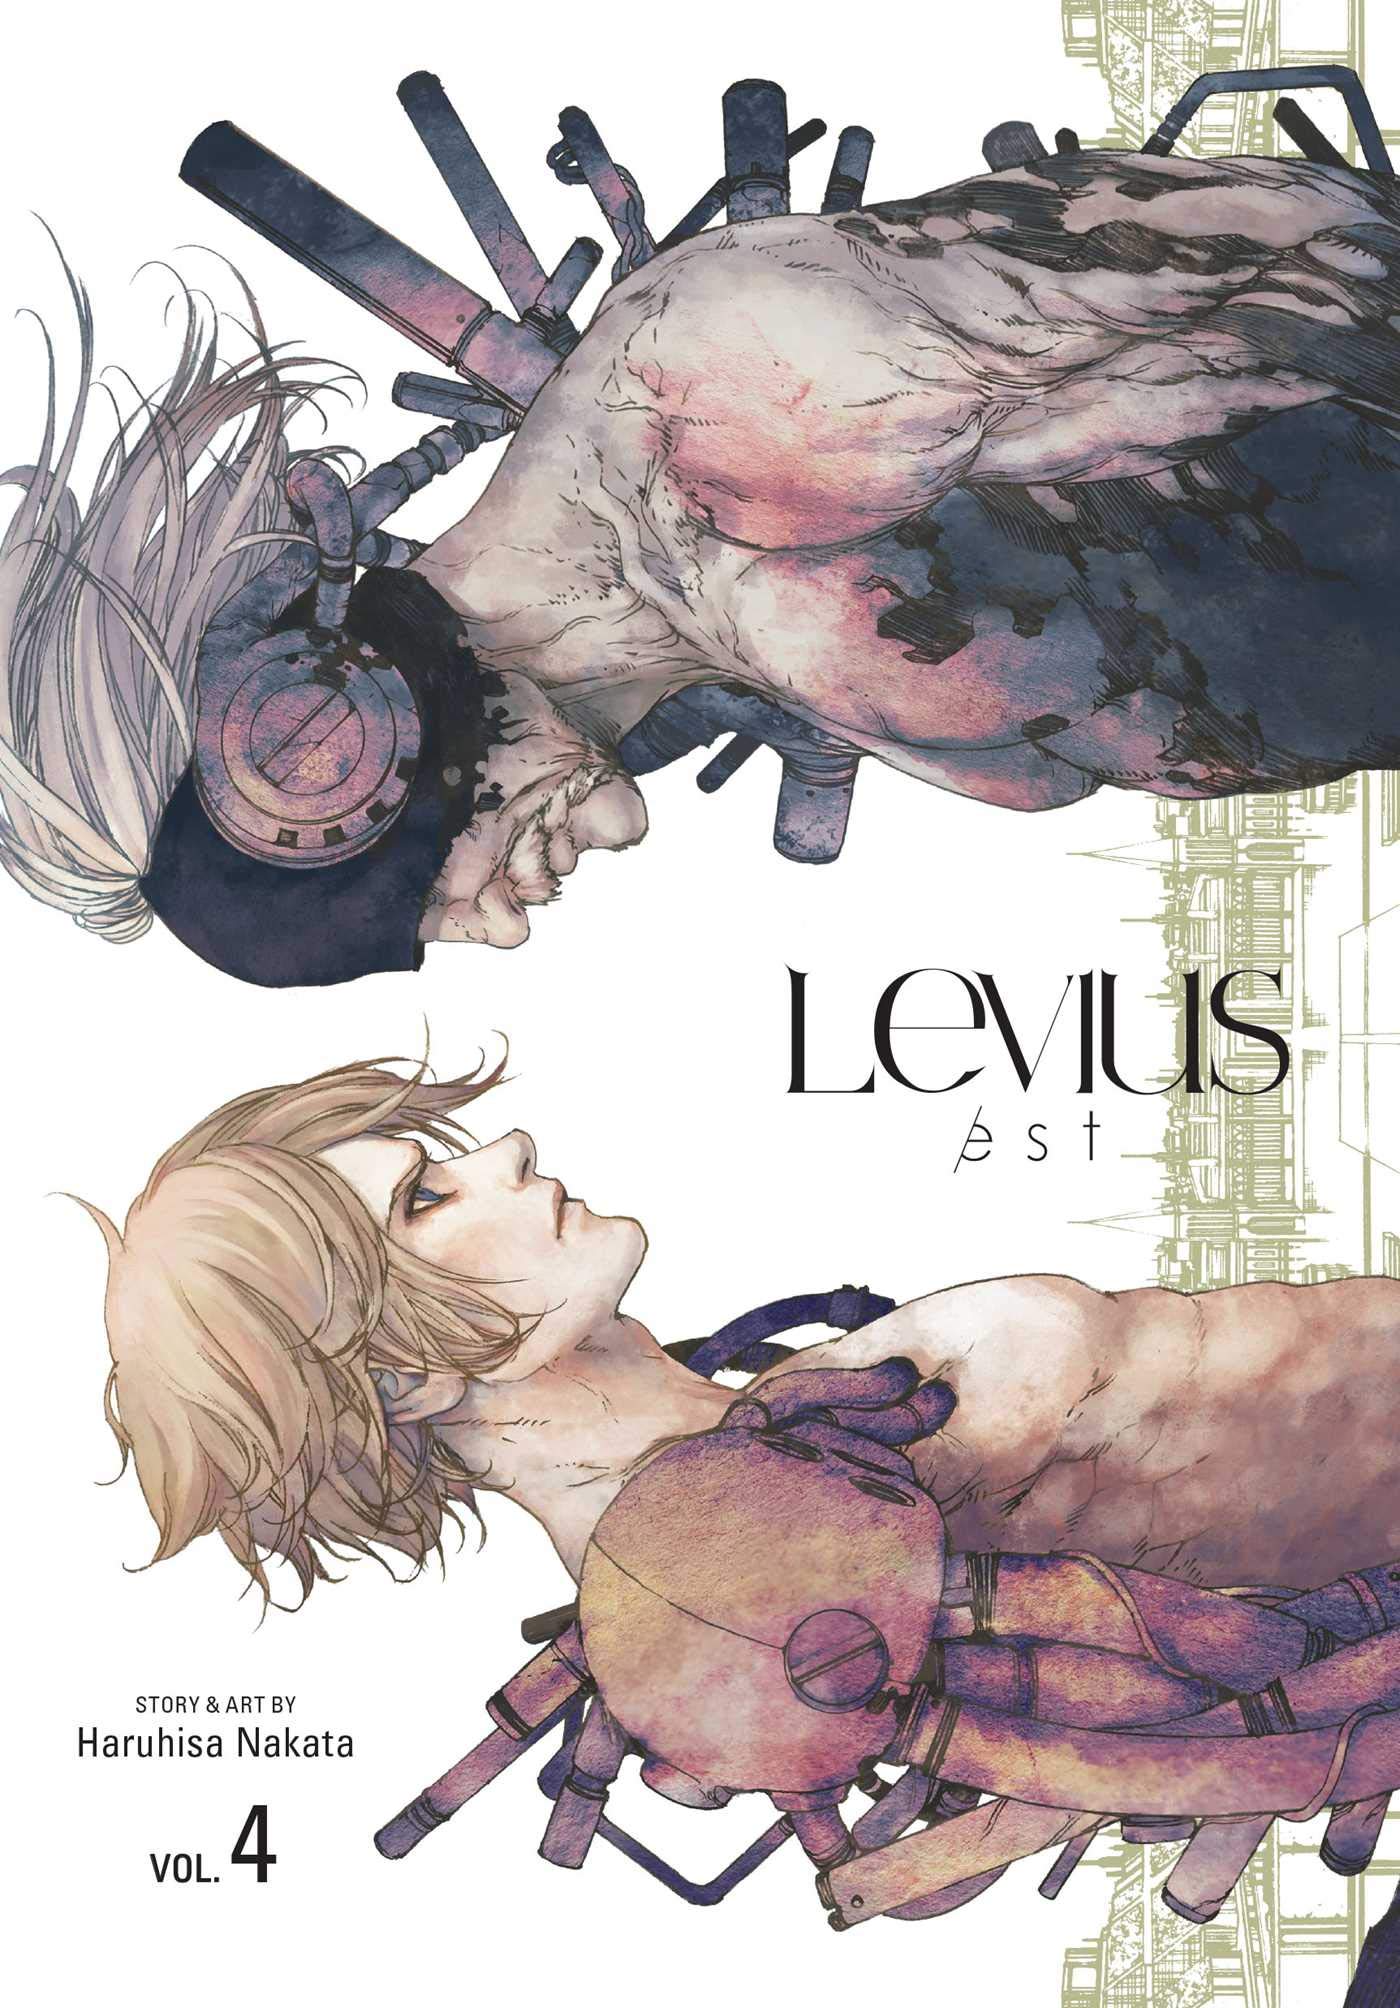 Levius/est - Volume 4